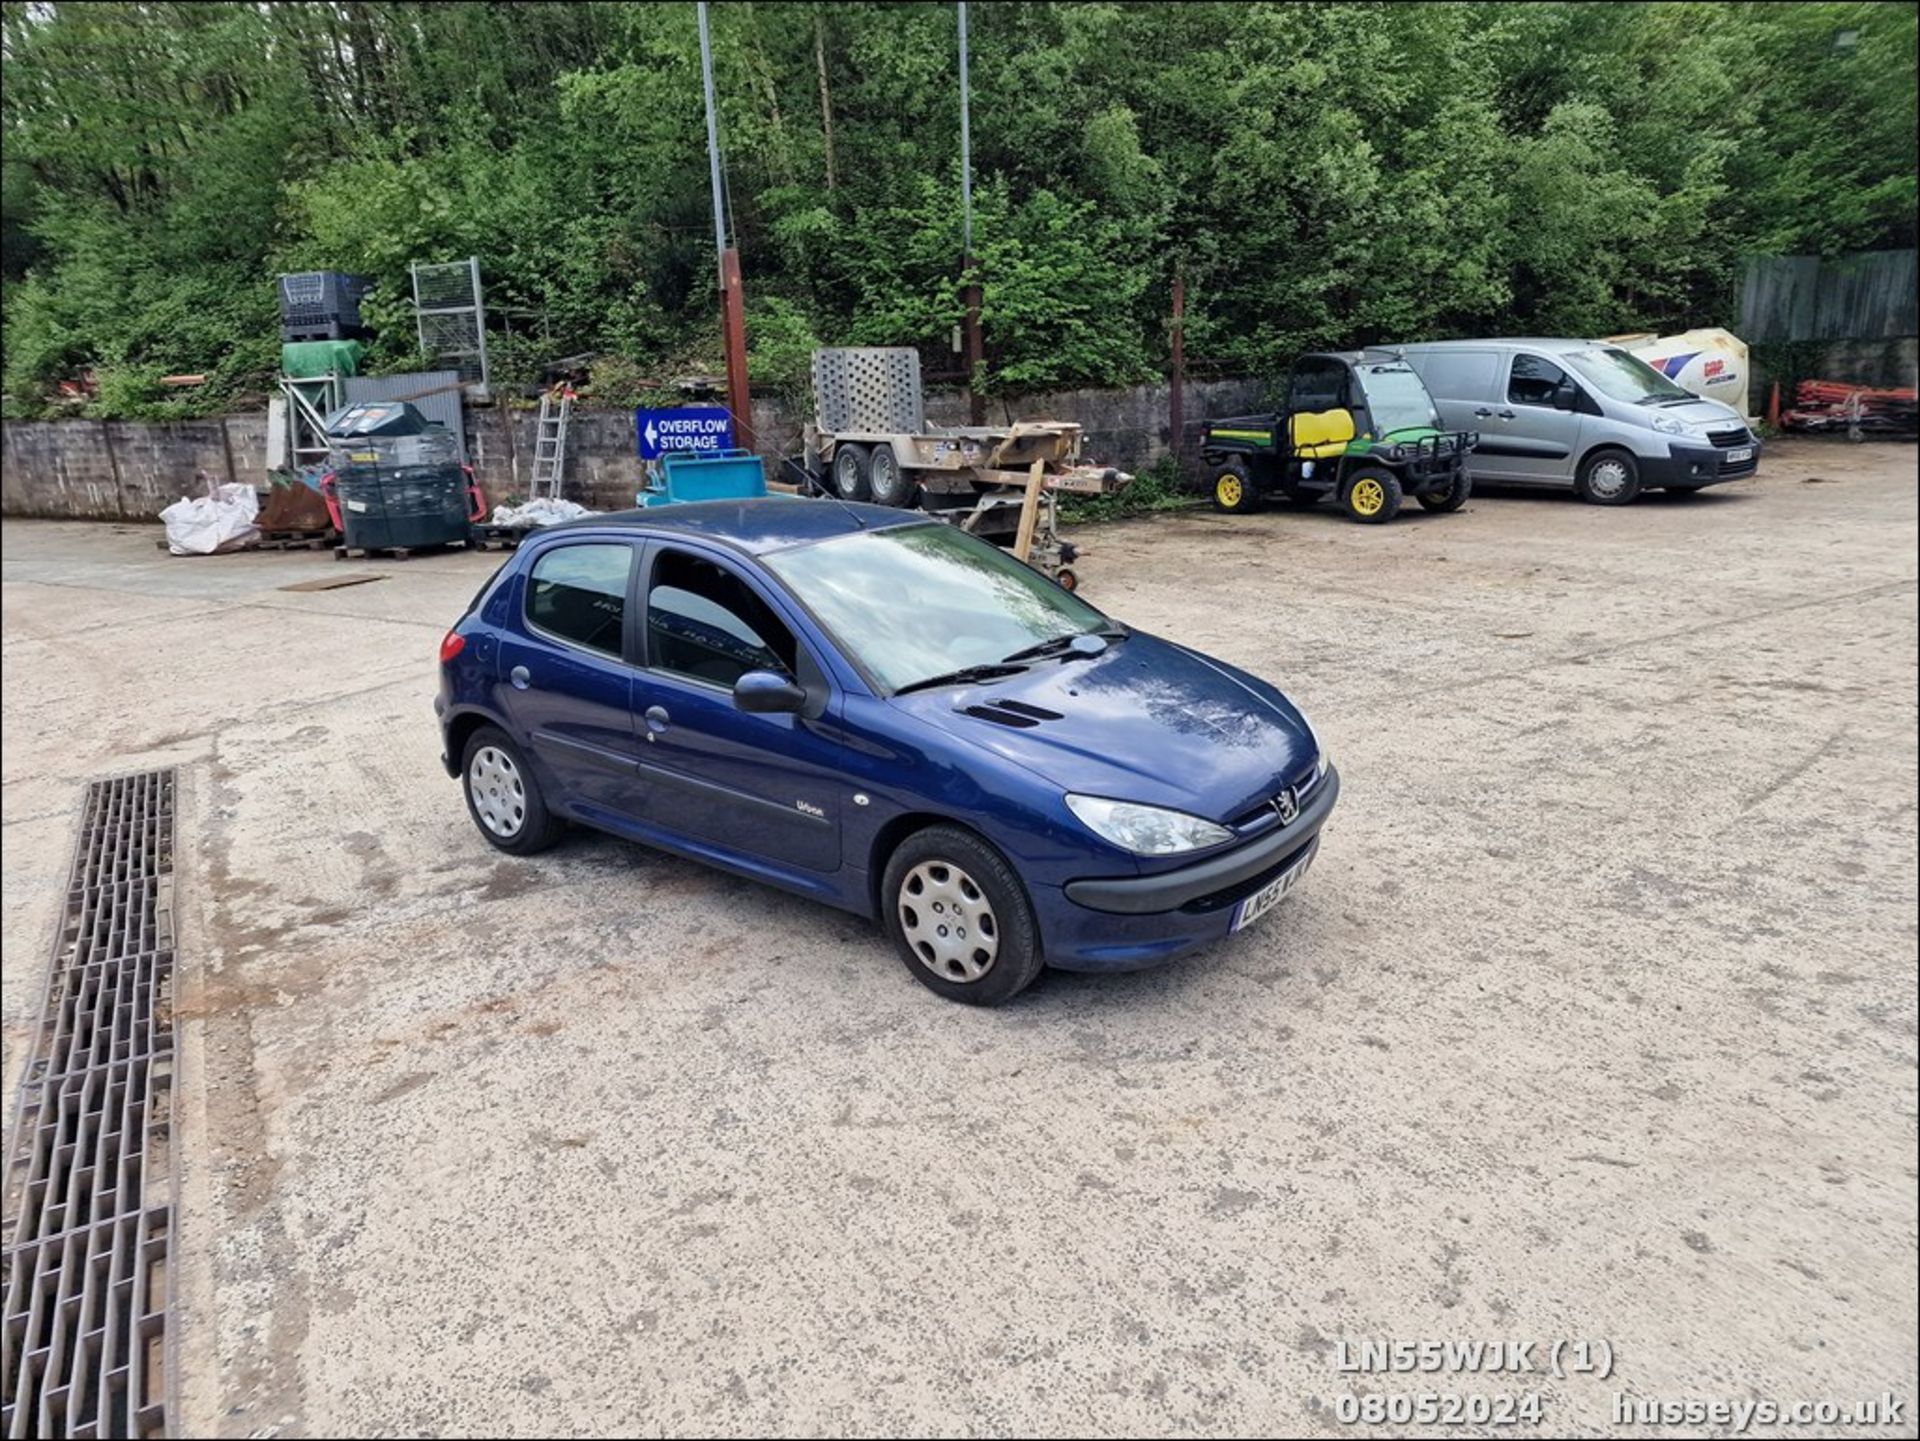 06/55 PEUGEOT 206 URBAN HDI - 1398cc 5dr Hatchback (Blue, 165k) - Image 2 of 32